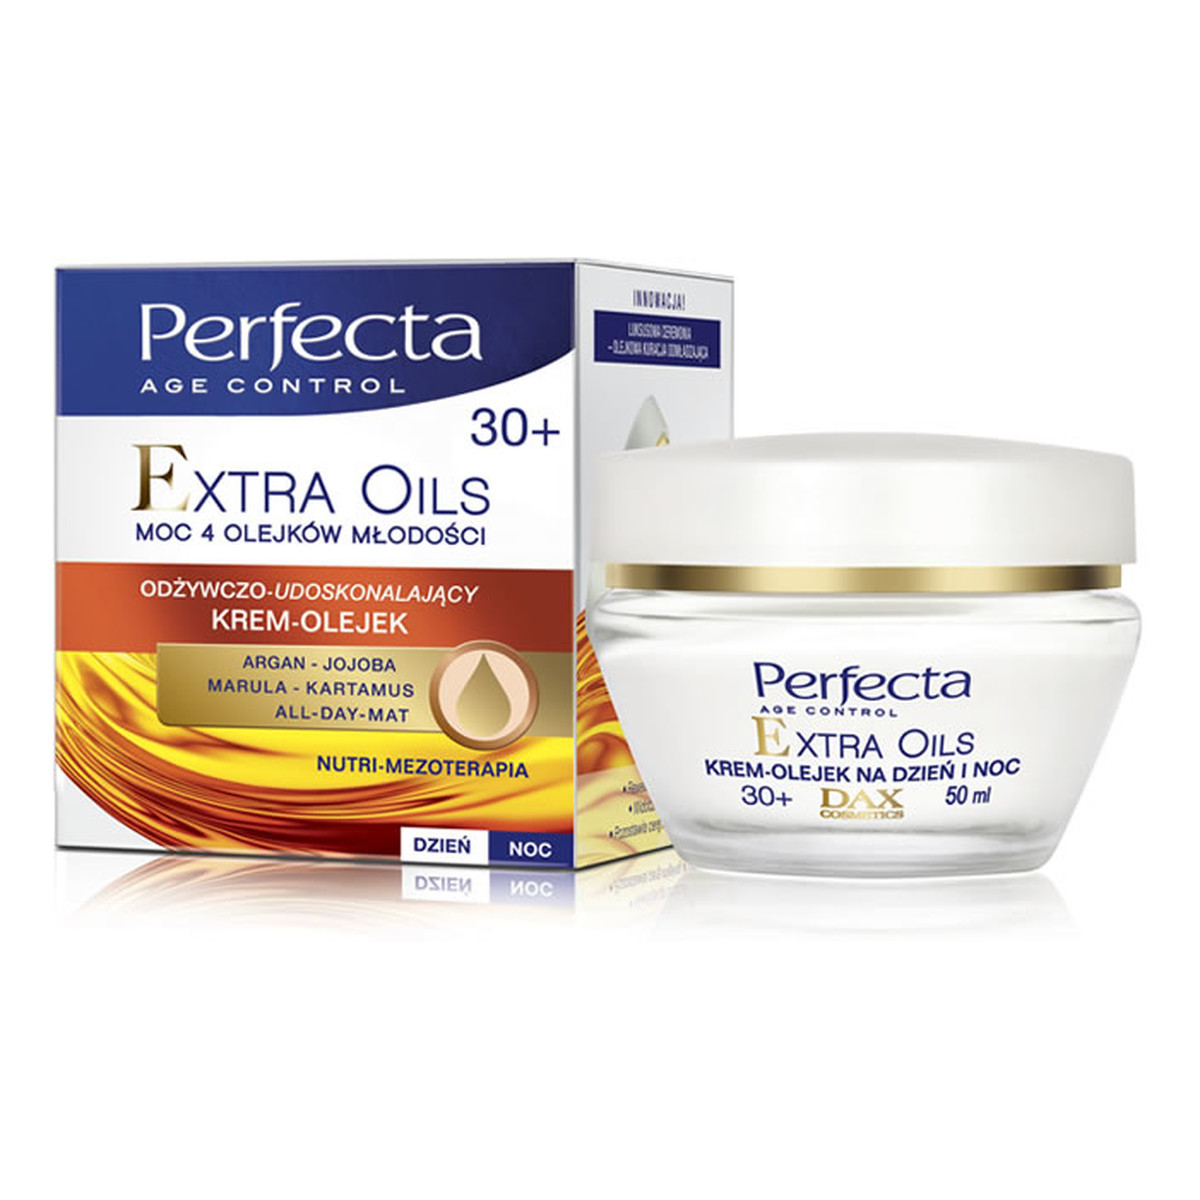 Perfecta Age Control Extra Oils 30+ Krem-Olejek Odżywczo-Udoskonalający Na Dzień i Na Noc 50ml